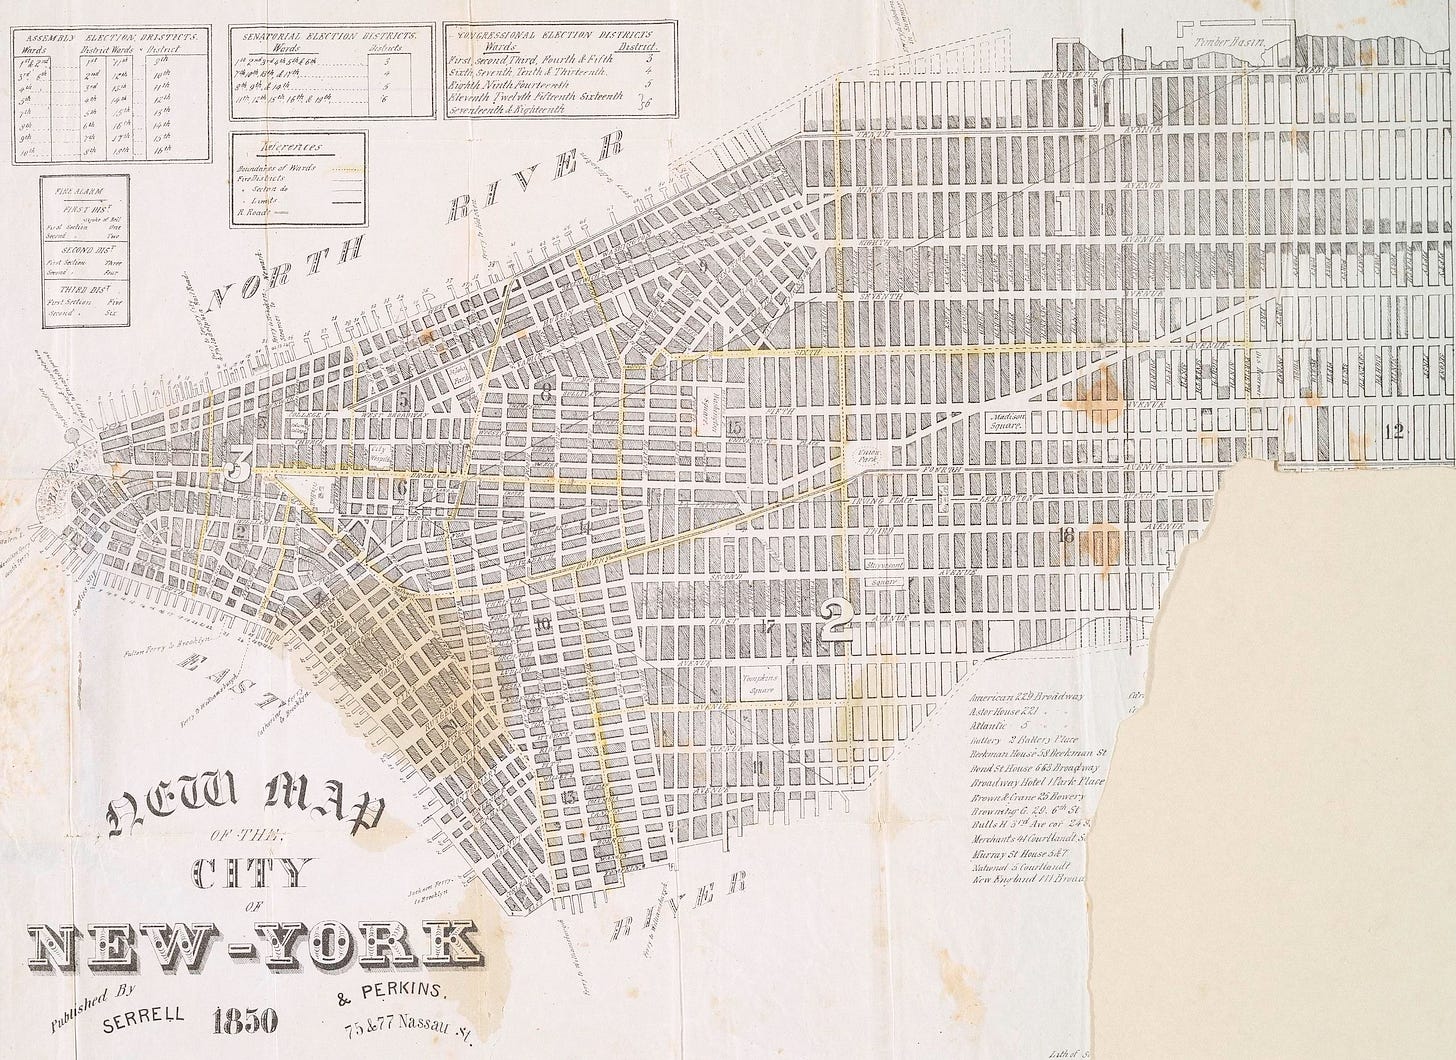 An old map of Manhattan